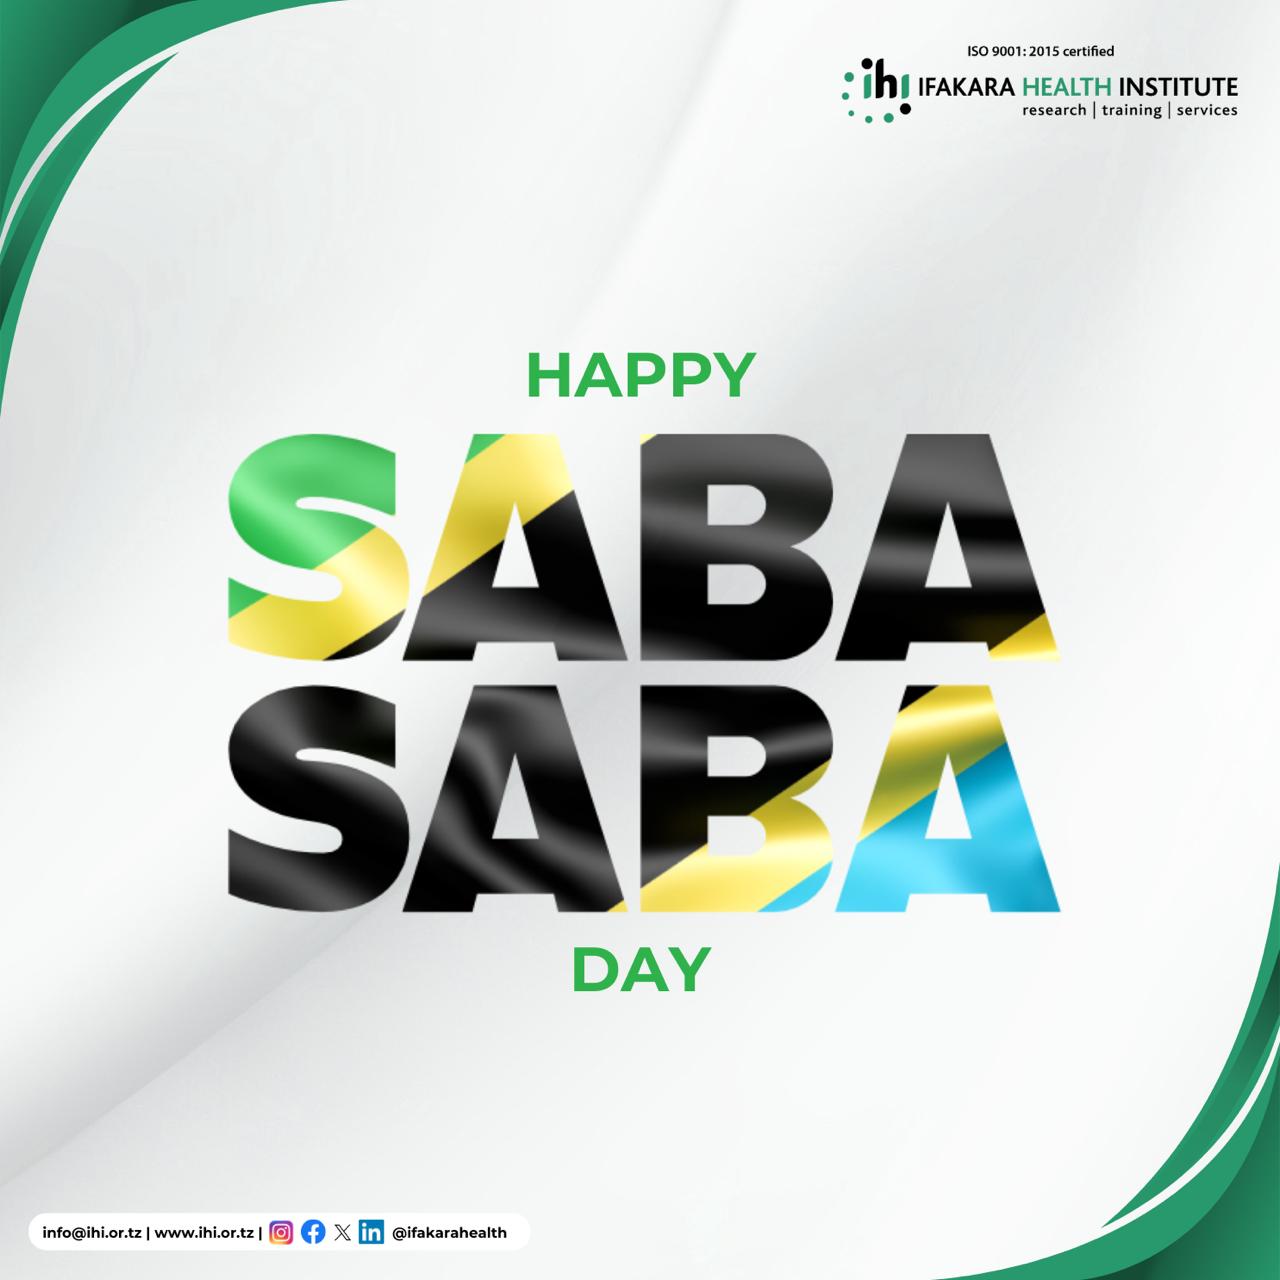 HOLIDAY: It's Saba Saba!